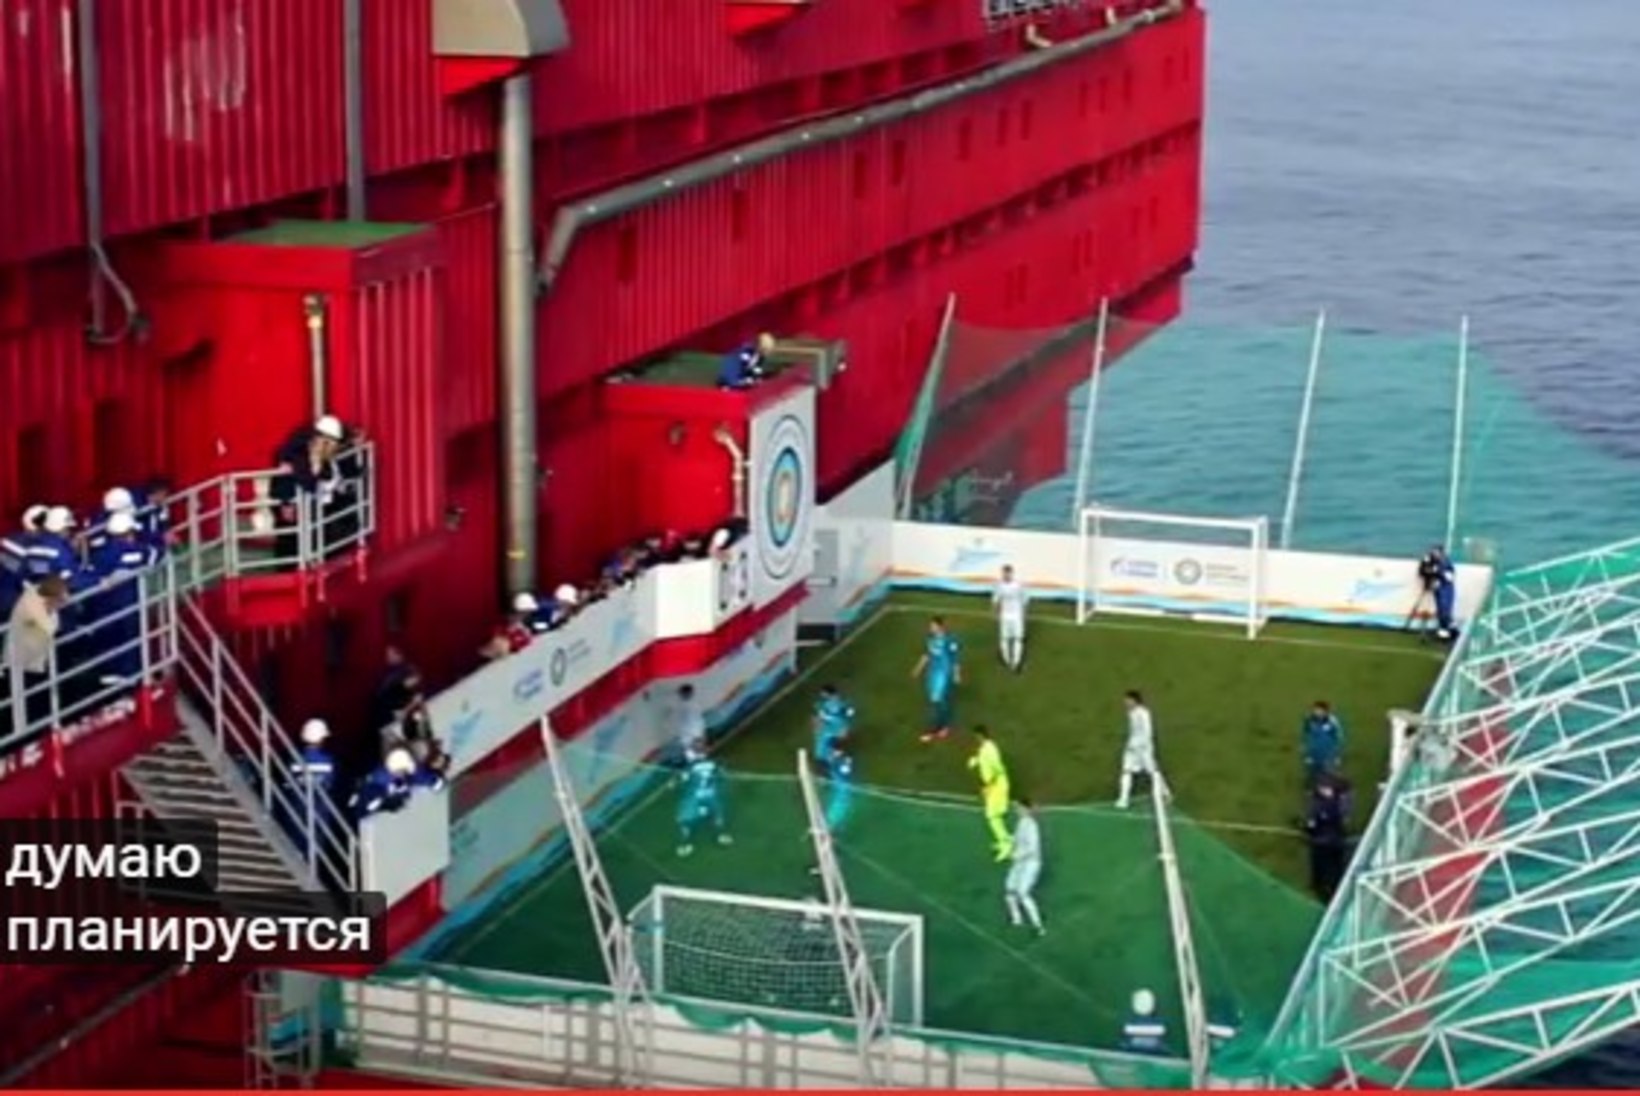 VIDEO | Usute või mitte? Zeniti staarid käisid Põhja-Jäämeres naftapuurtornil jalgpalli mängimas